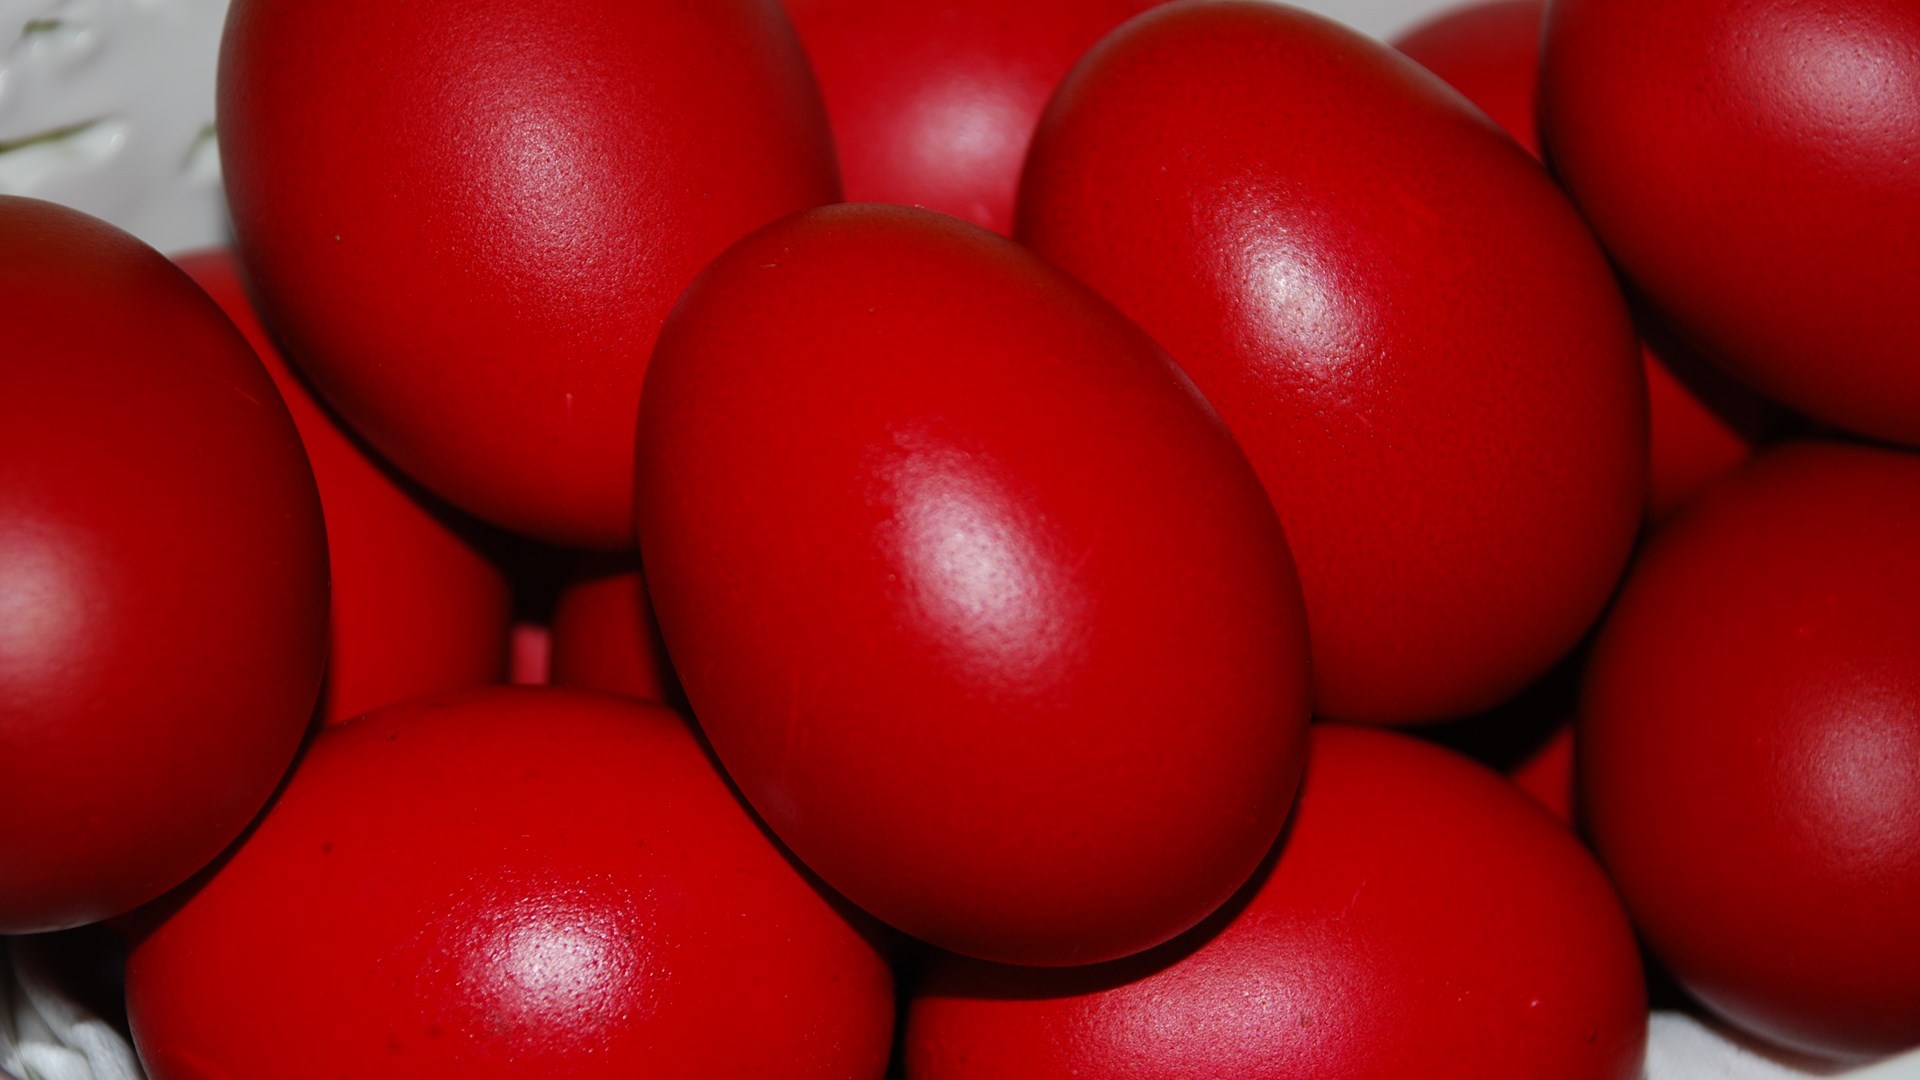 Πώς να βάψετε πασχαλινά αυγά χωρίς να σπάσουν